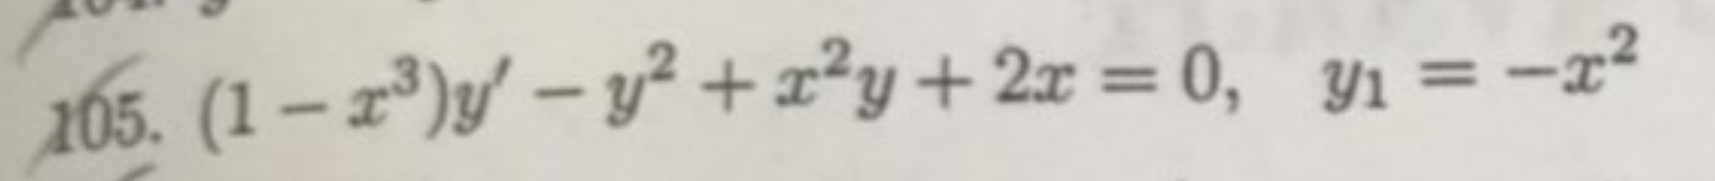 (1– 1)y' – y² +x²y+2x = 0, Y1 = -x²
%3D
